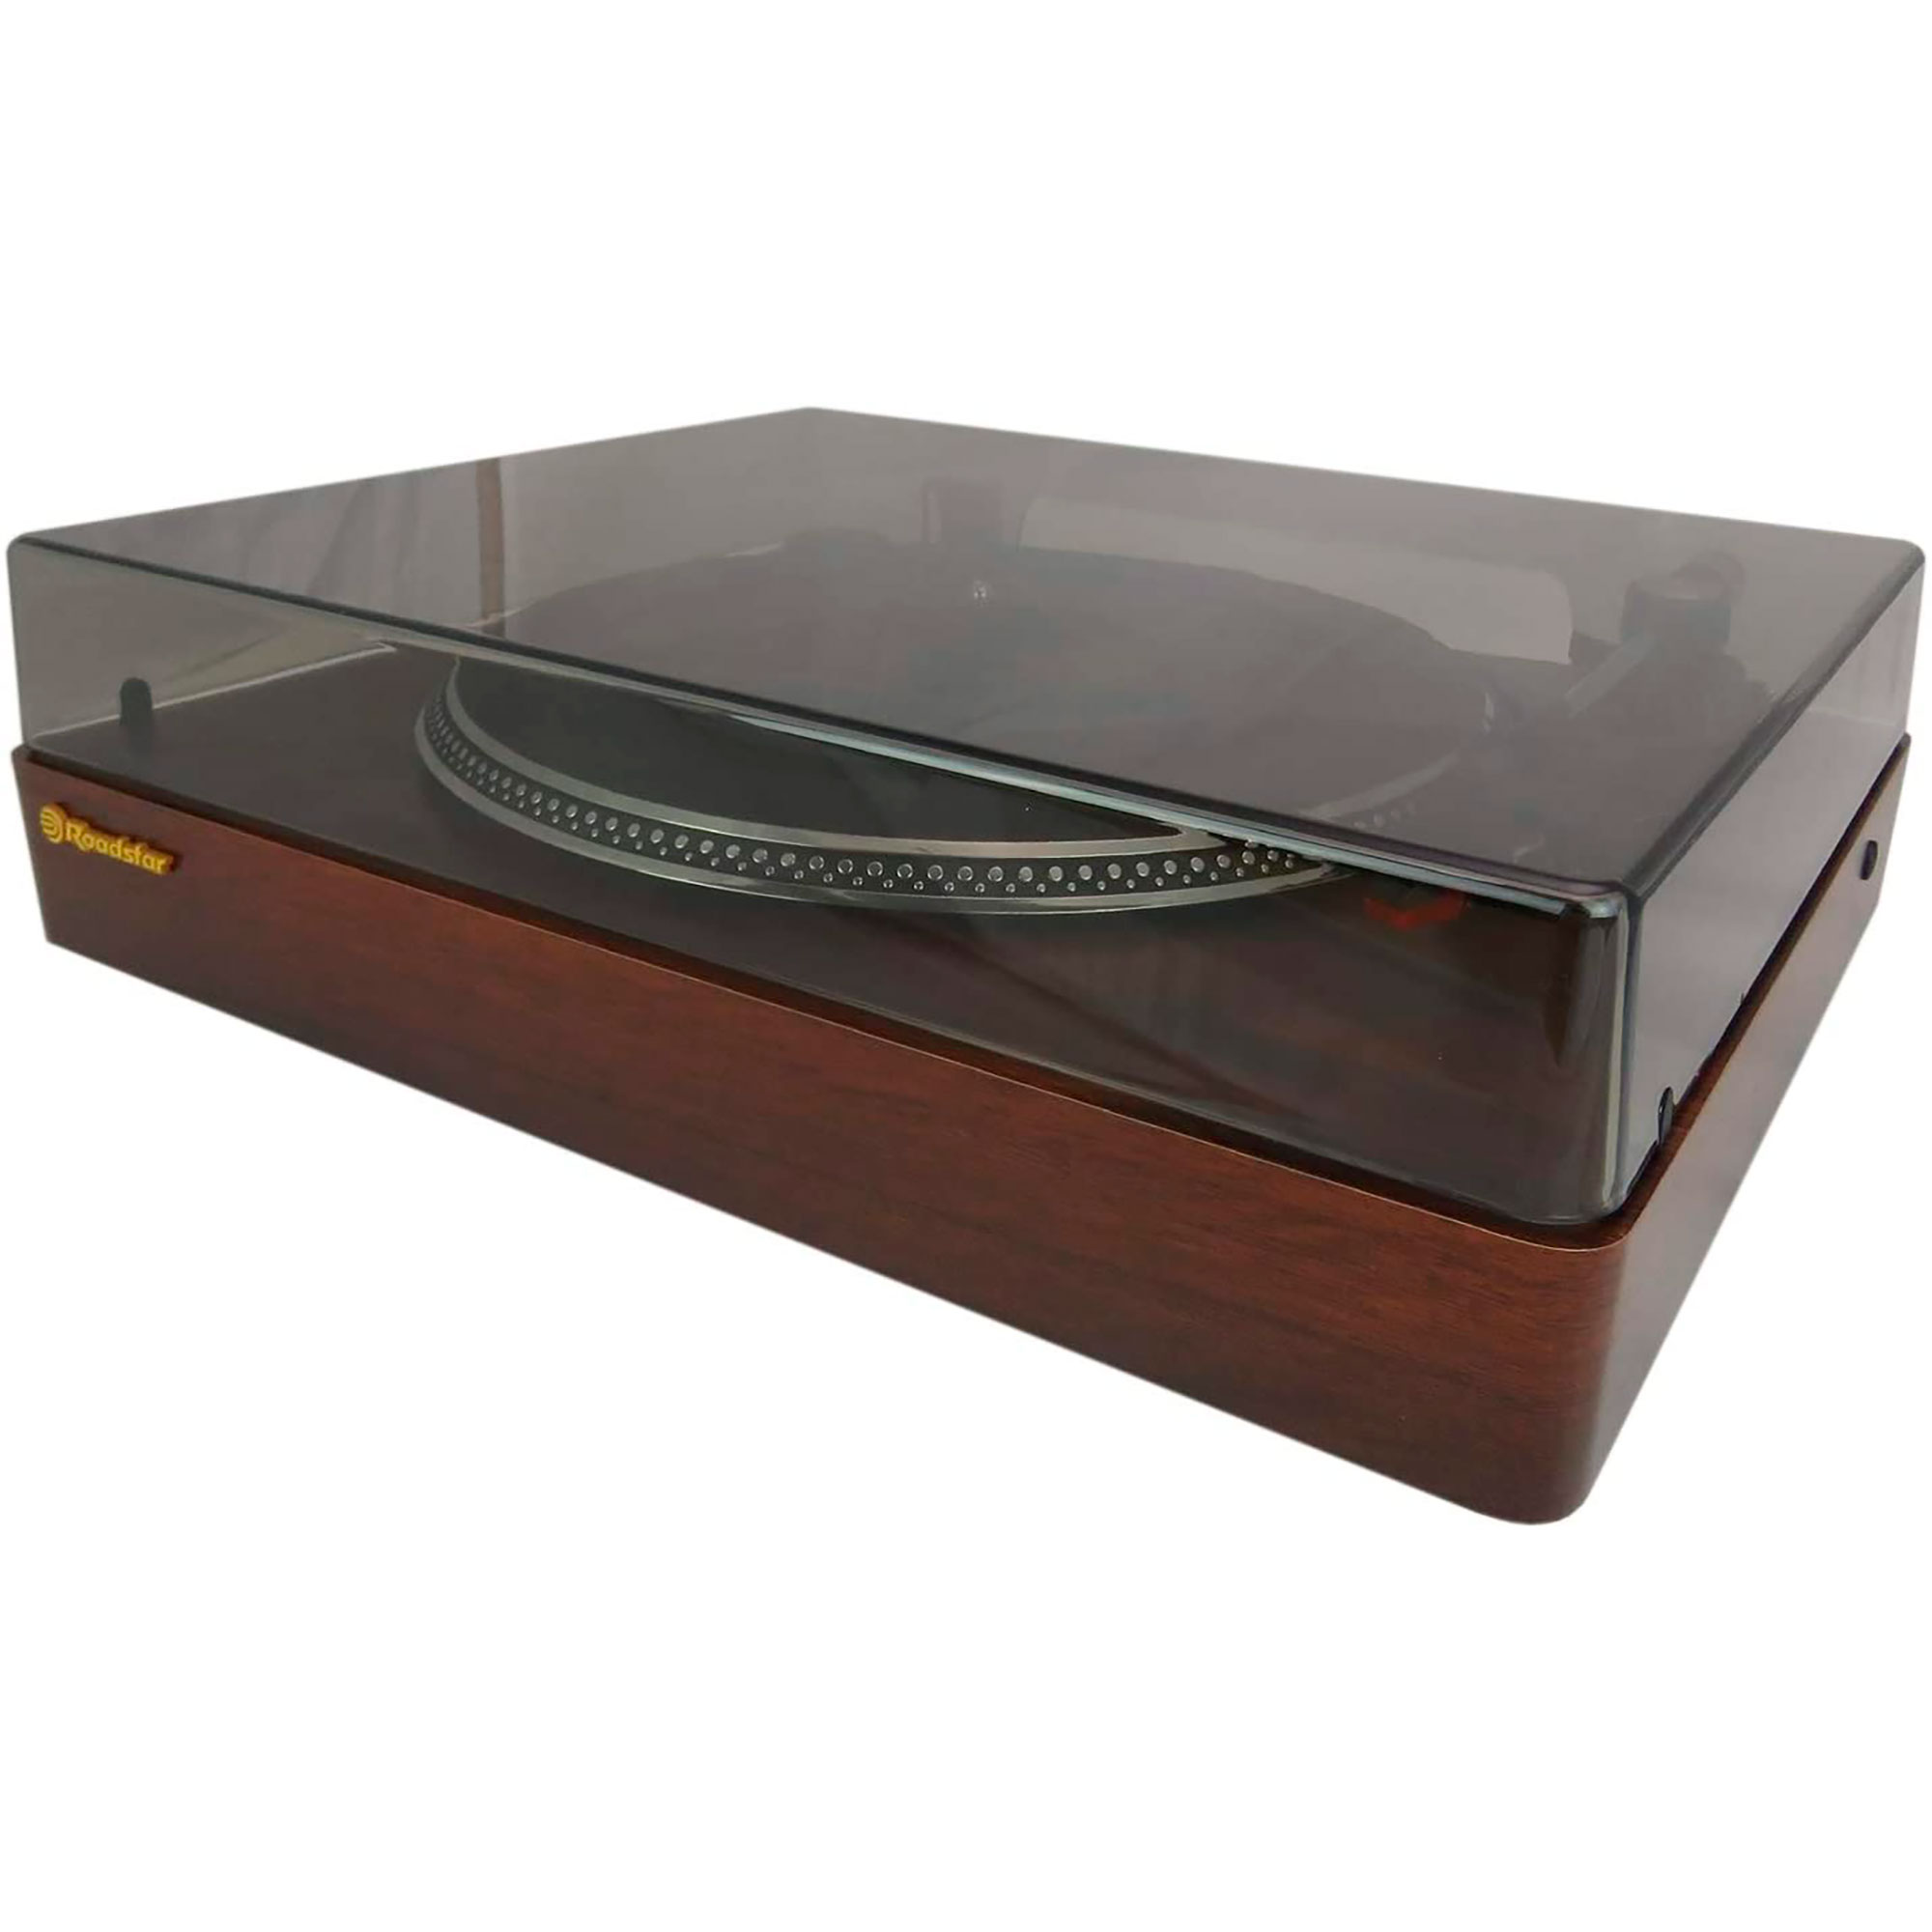 ROADSTAR Holz Vintage TT385BTT Vinyl-Plattenspieler Retro